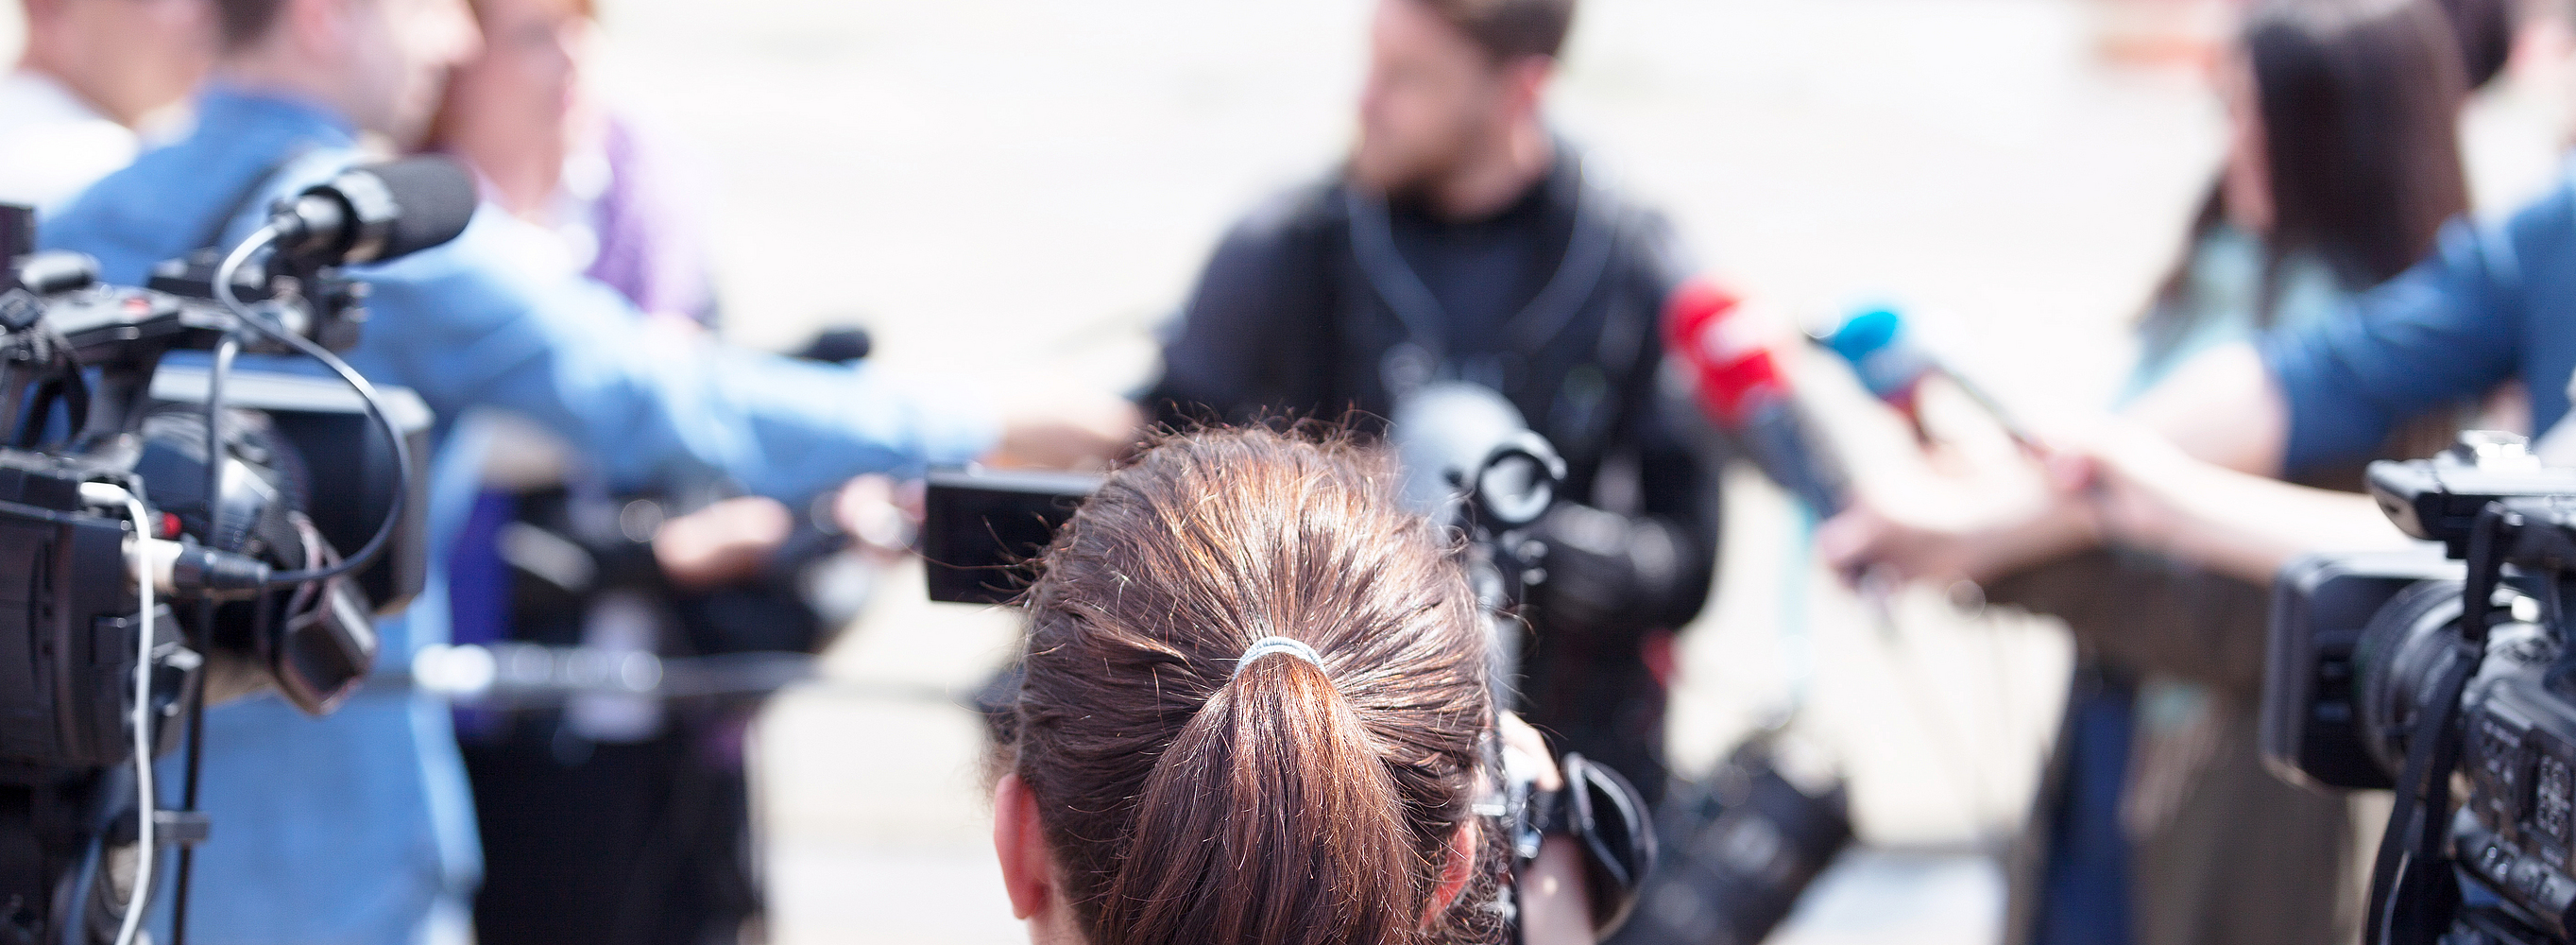 Eine Person nimmt mit einer Videokamera eine Pressekonferenz oder ein Medienereignis auf.